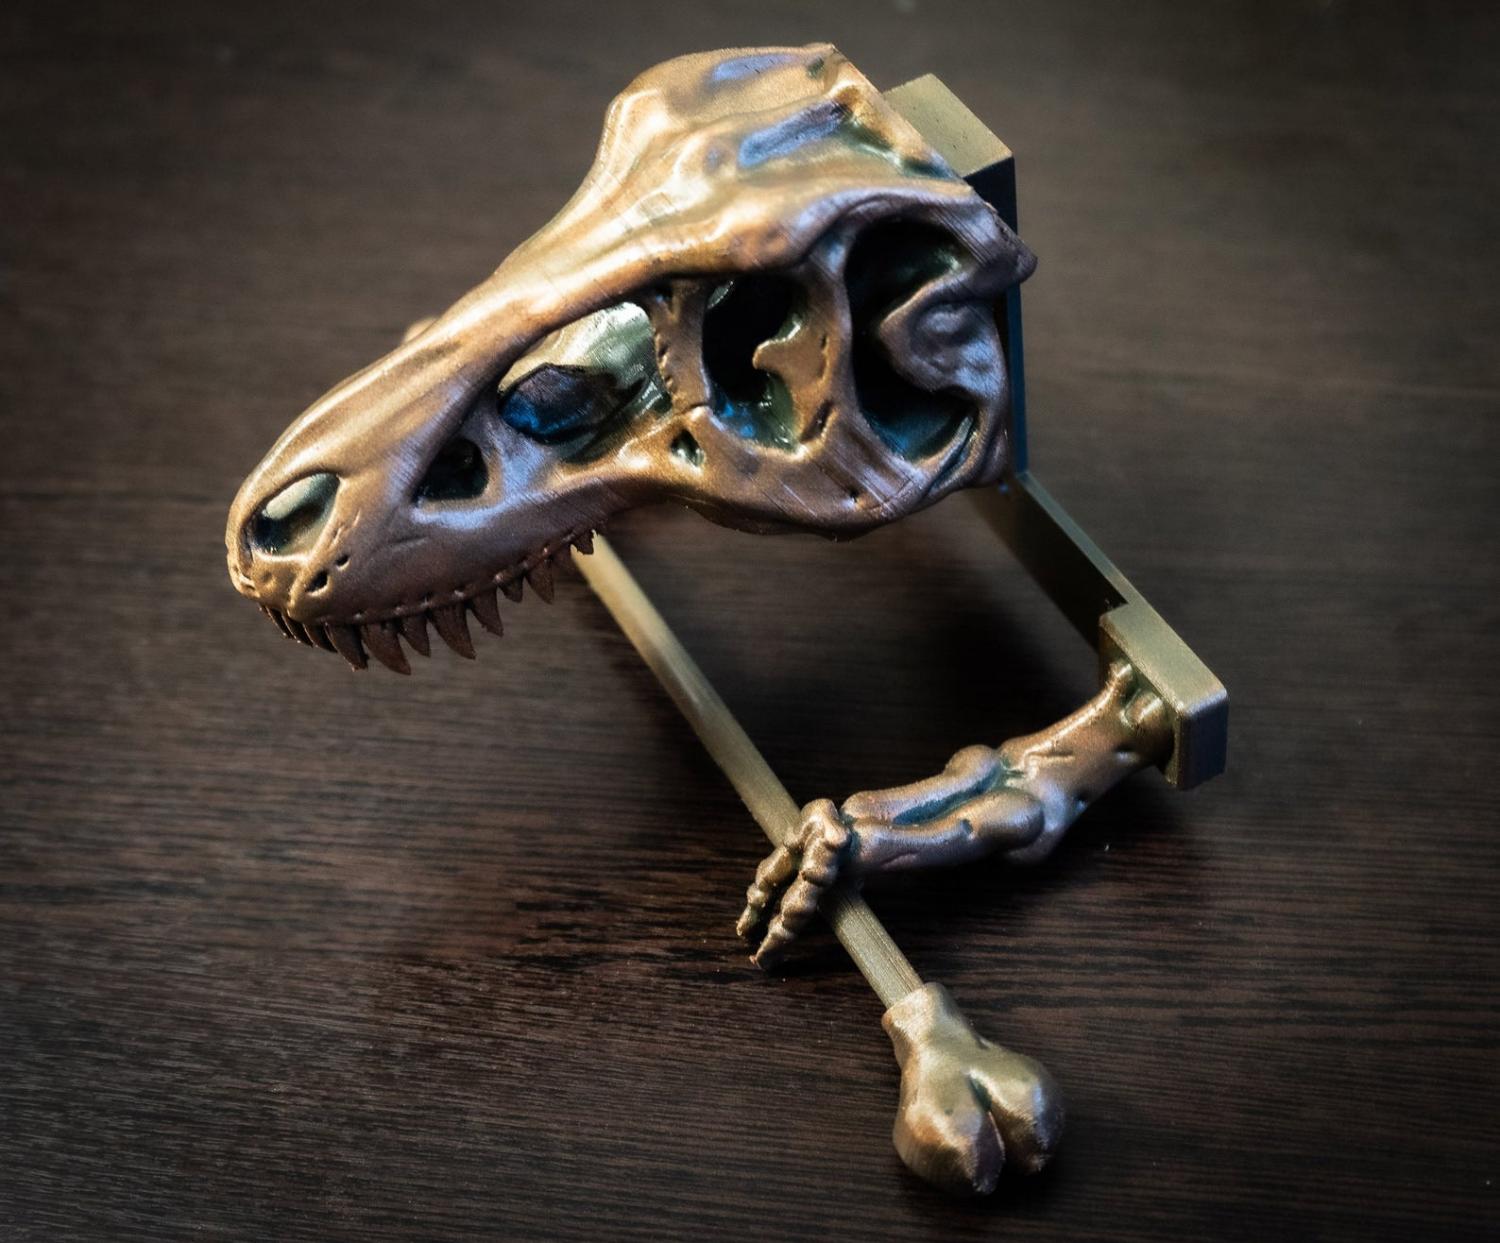 T-Rex Dinosaur Skeleton Toilet Paper Holder